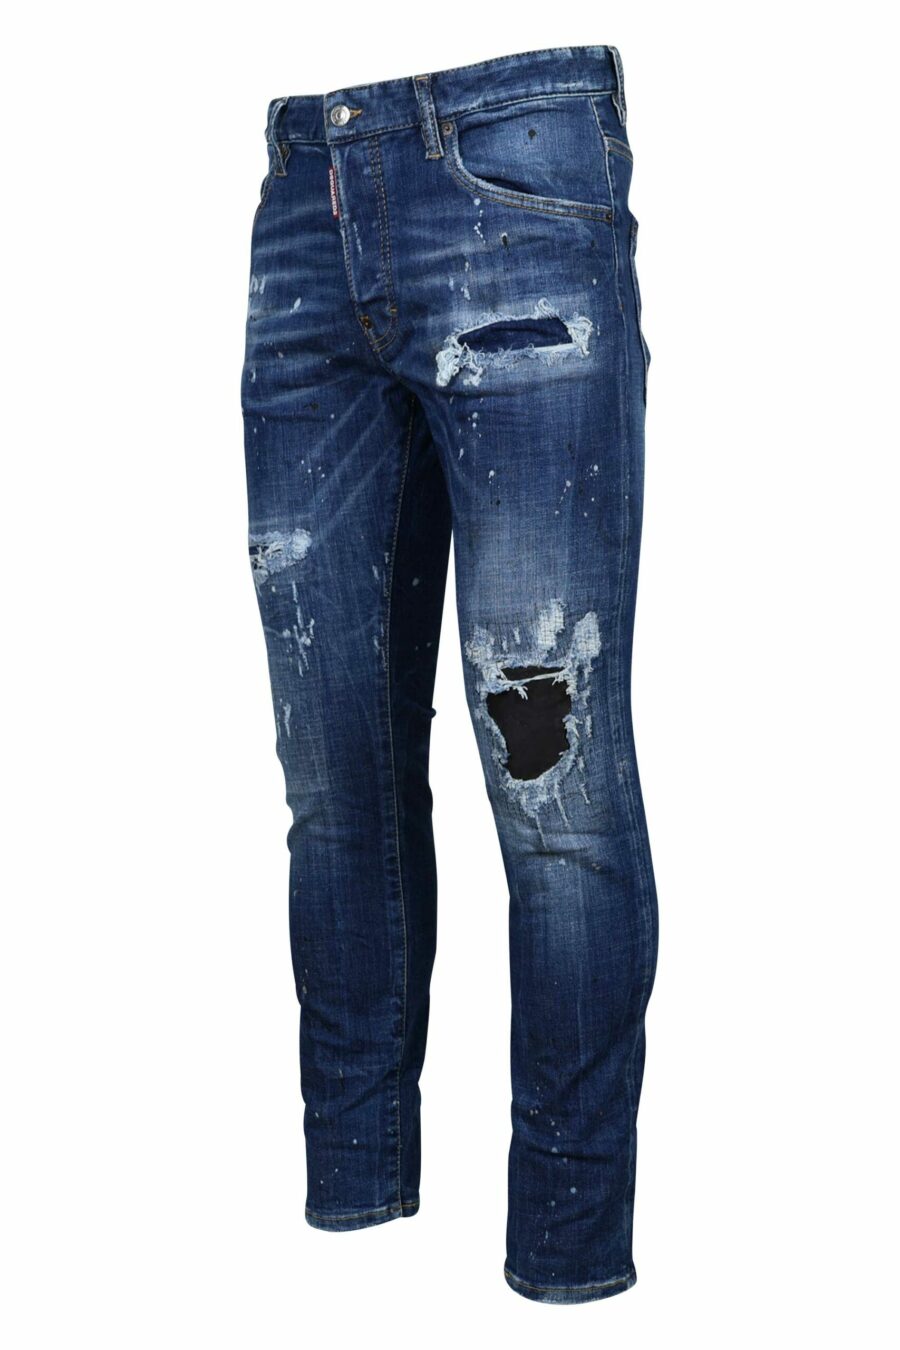 Calças de ganga "skater jean" azuis com rasgões e desgastadas - 8054148124687 1 1 à escala